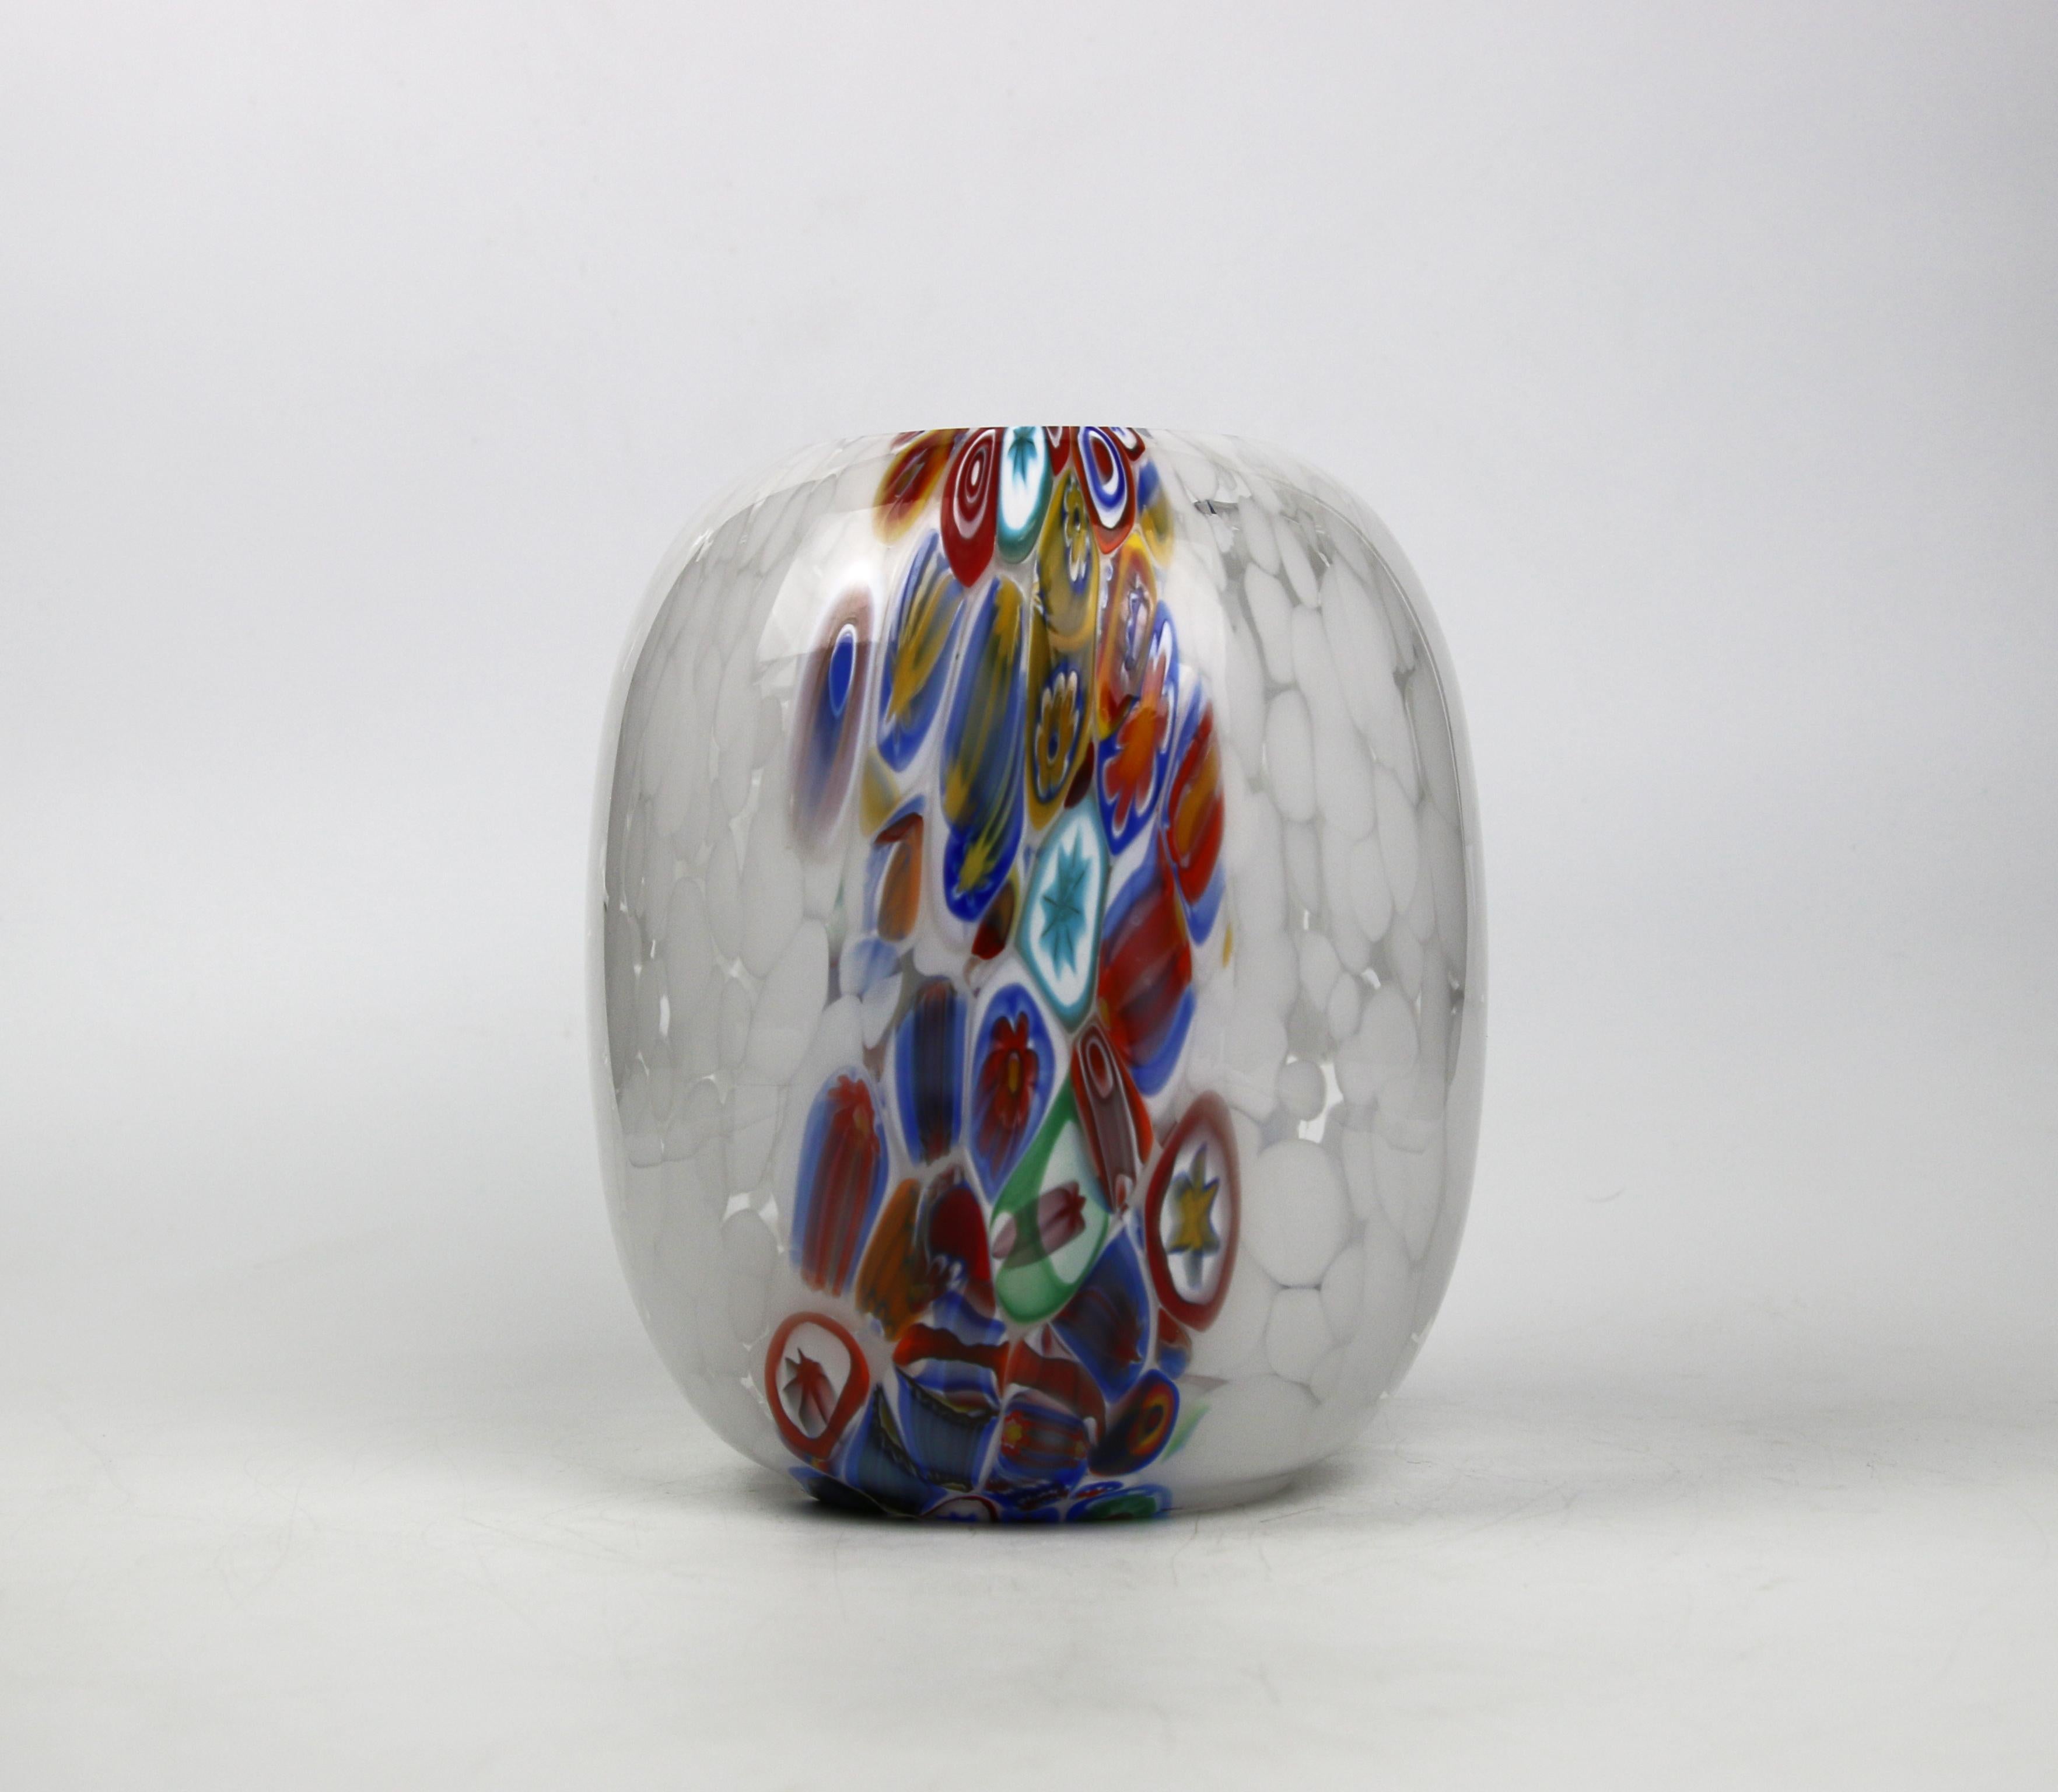 Italian 1295 Murano Art Glass Cilinder Vase Hand Made in Venice/Murano, White / Murrina For Sale